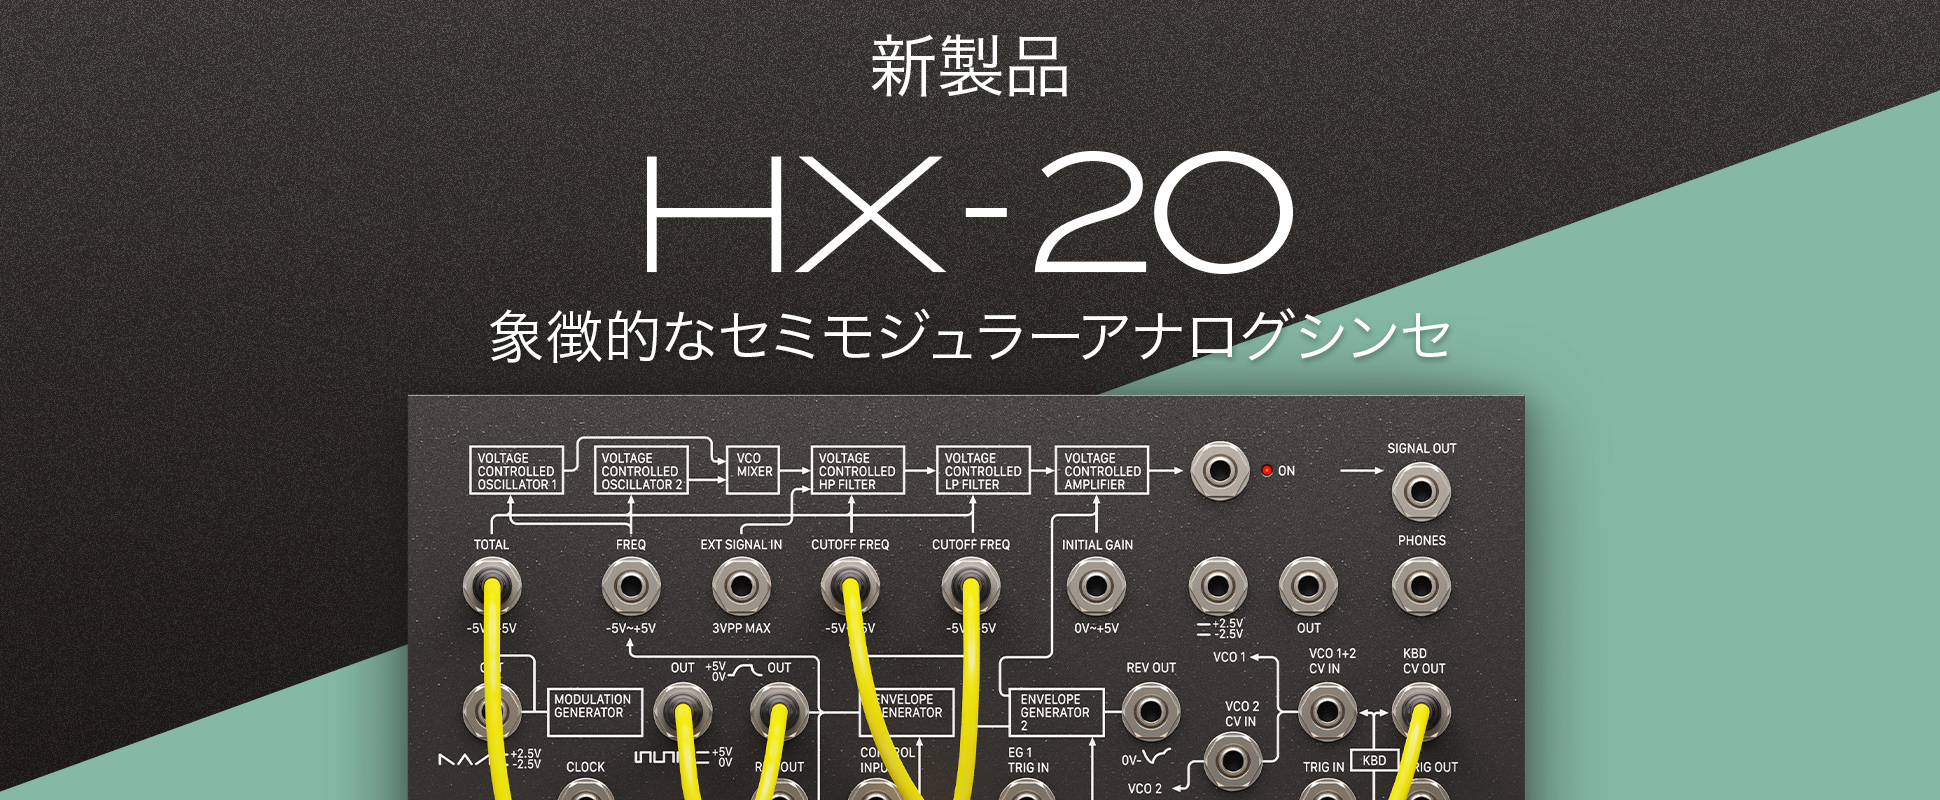 New - HX20